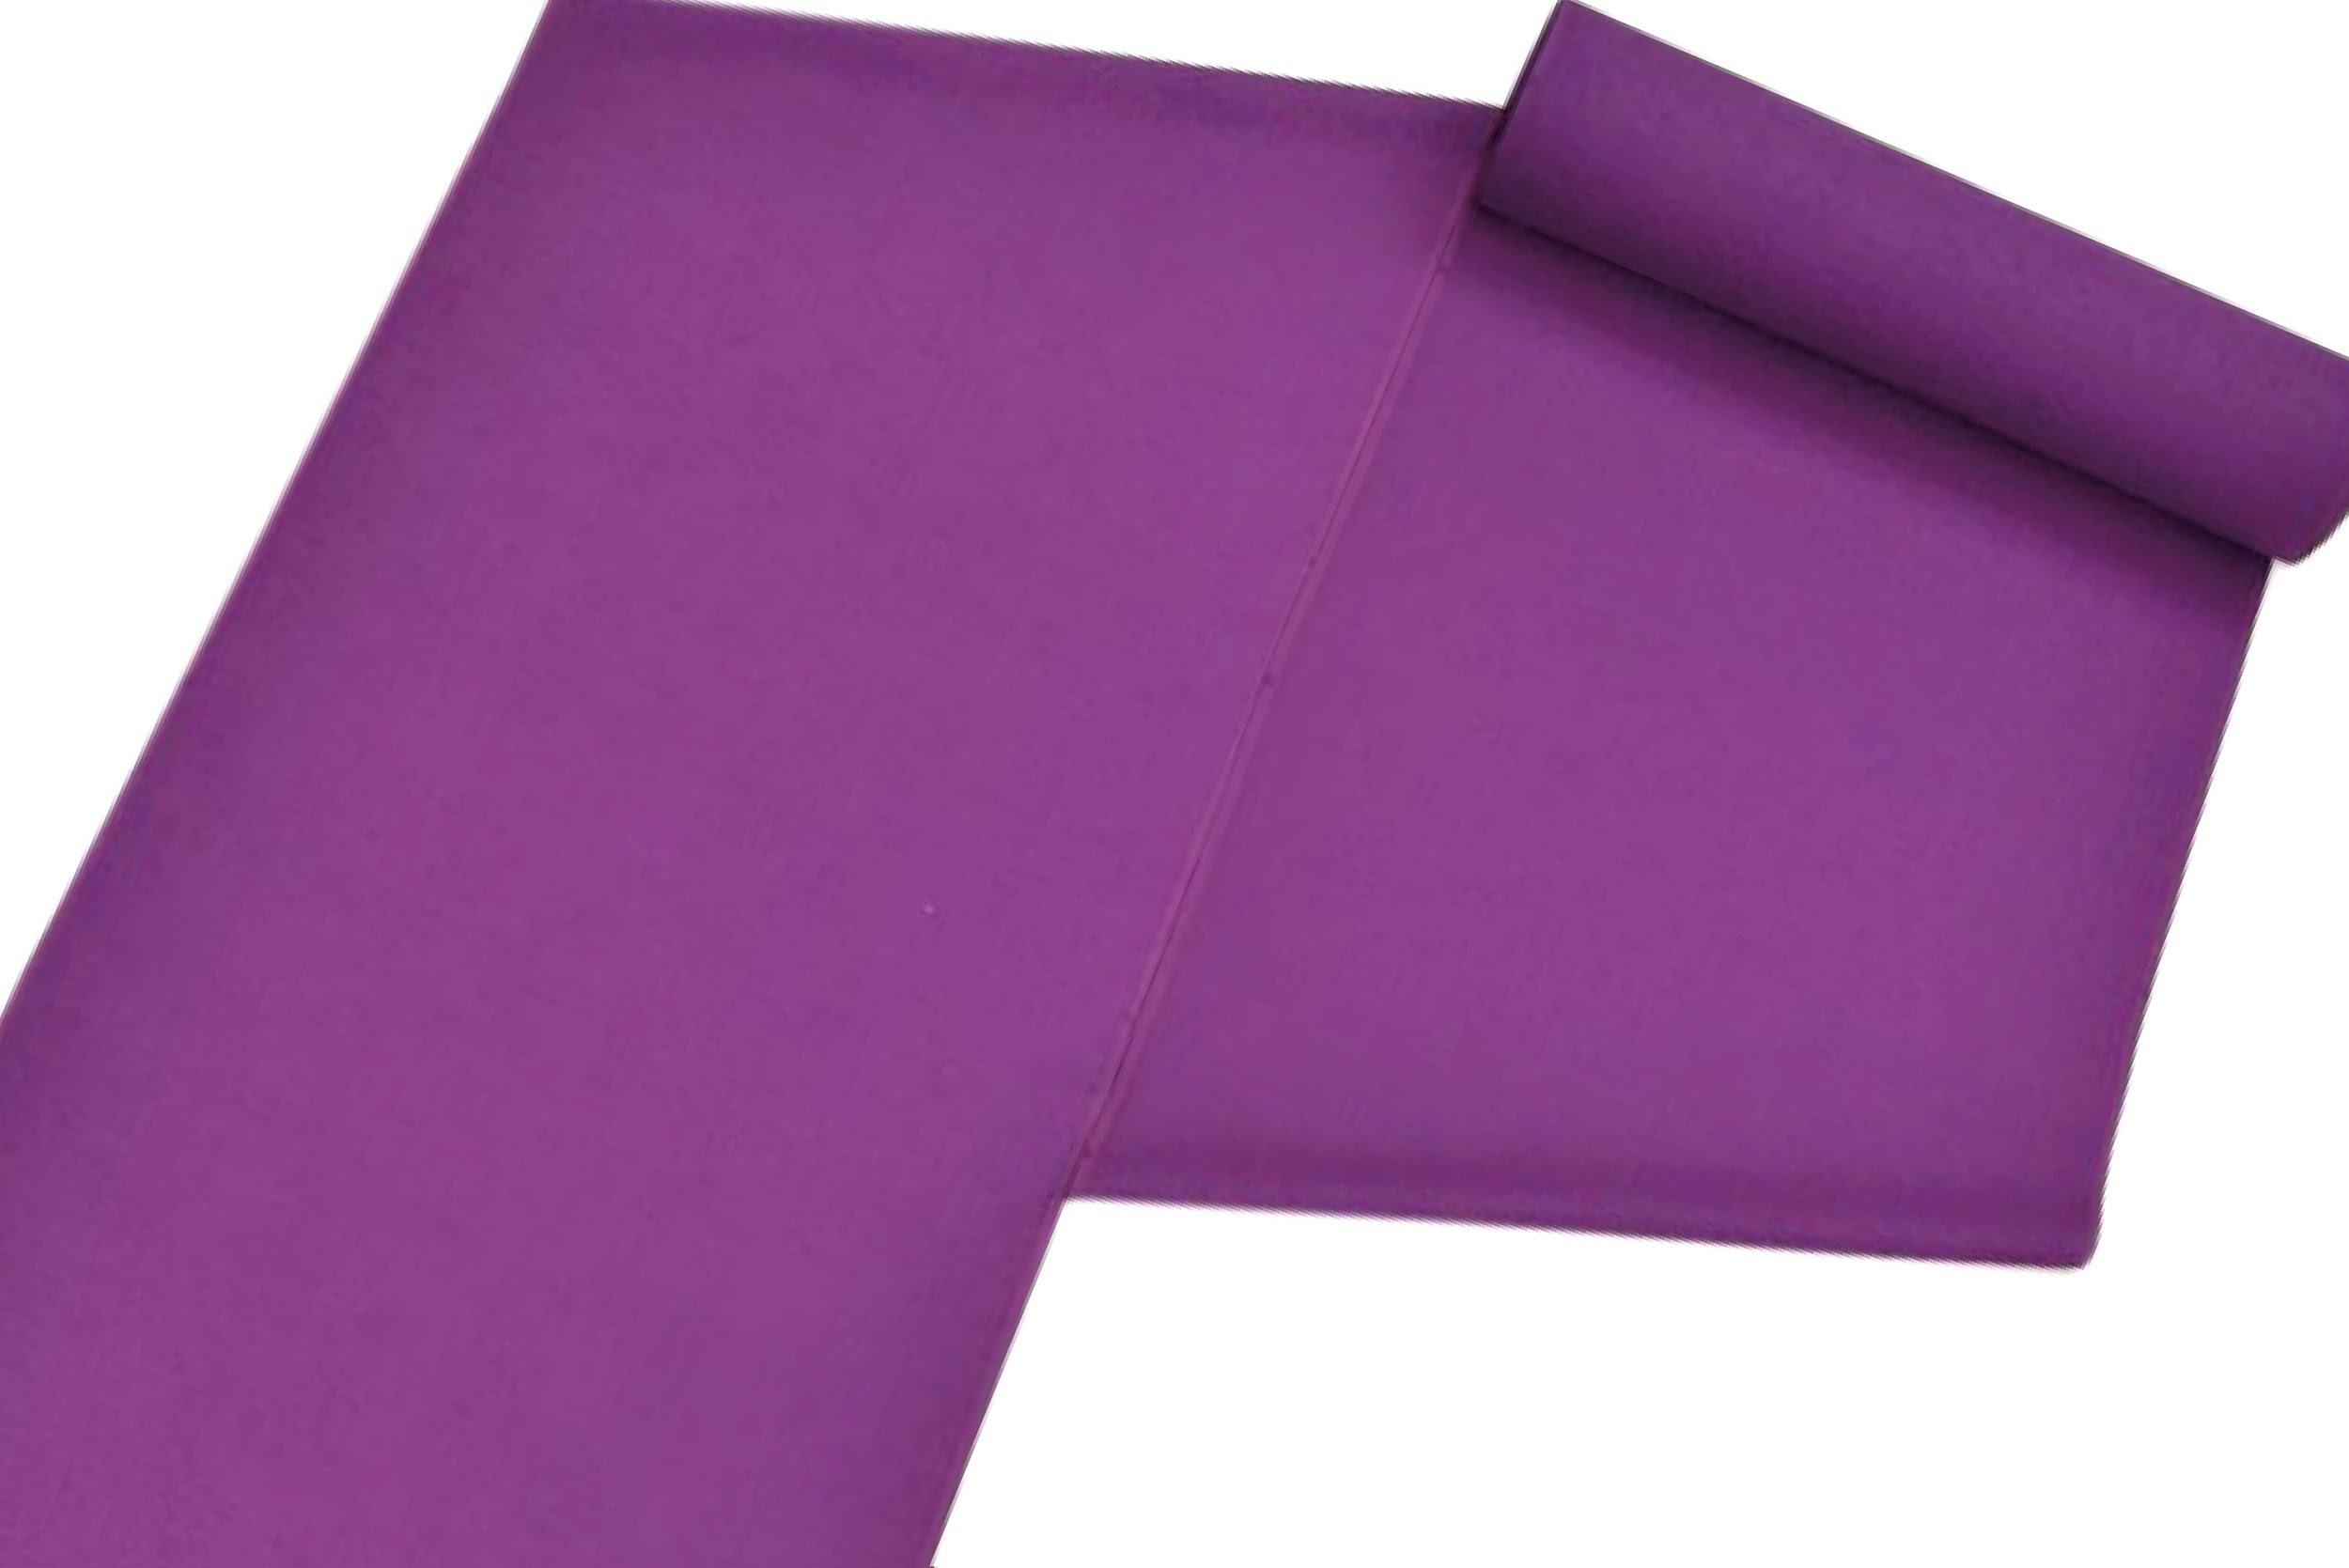 着物で広がる彩りの世界 紫 色の印象 コーディネートを学ぶ コラム きものと 着物メディア きものが紡ぐ豊かな物語 京都きもの市場